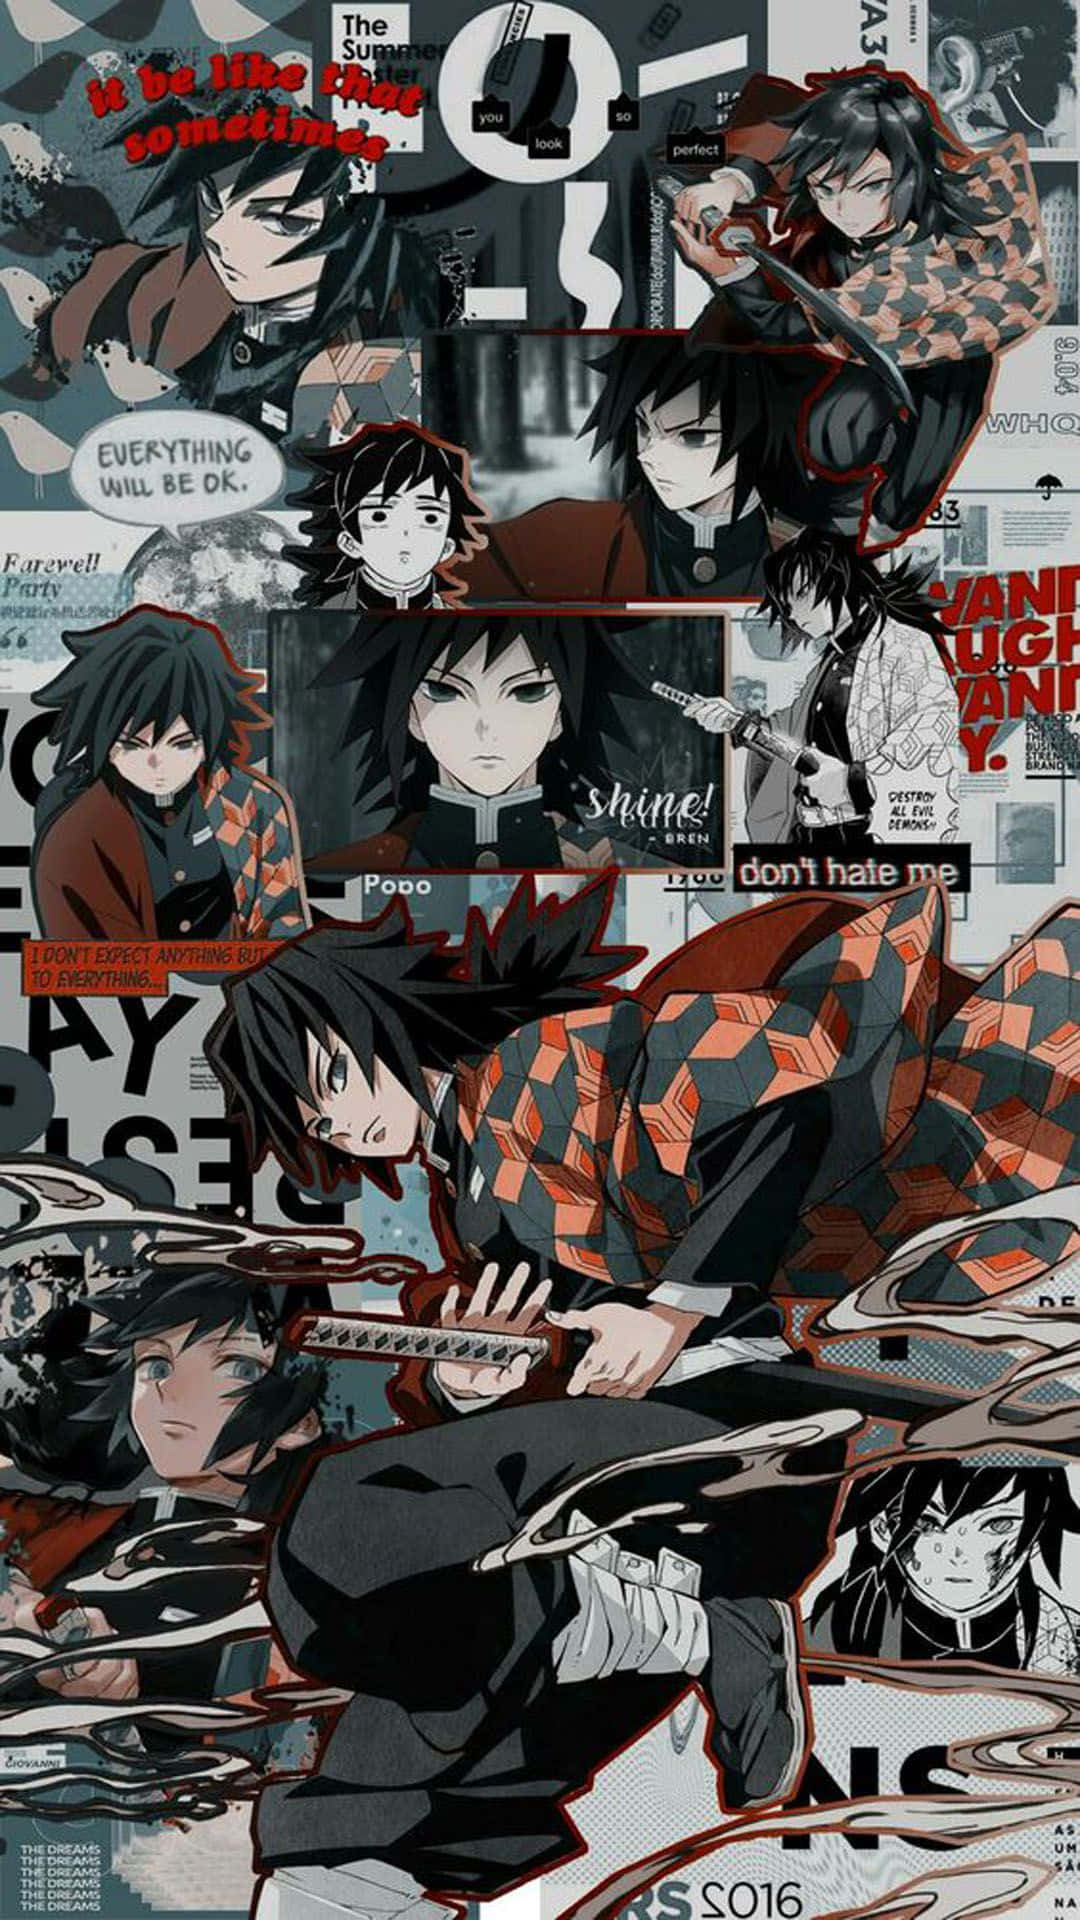 Tanjirokämpft Gegen Einen Dämon Im Manga Von Demon Slayer. Wallpaper